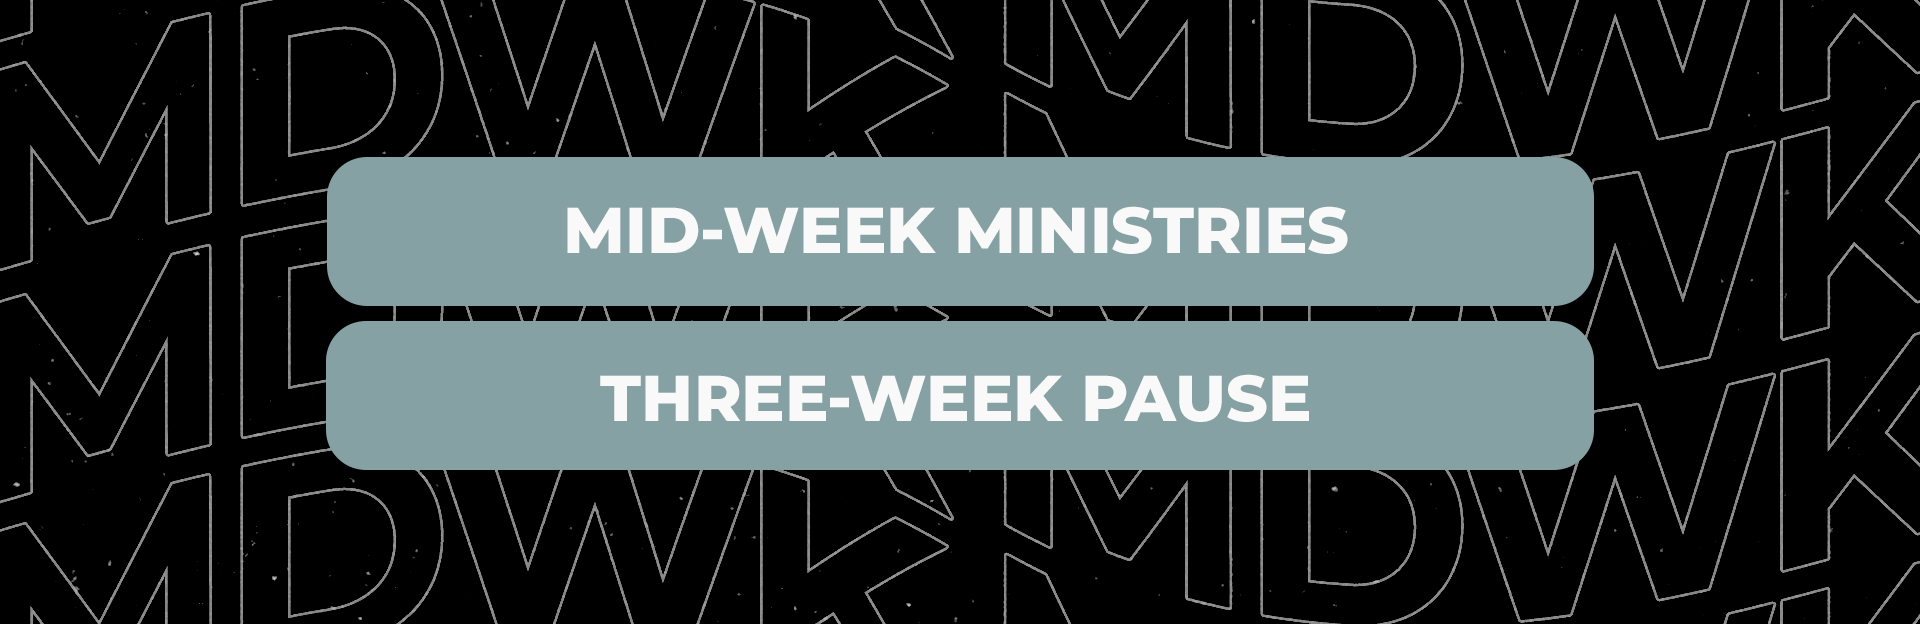 Mid-Week Ministries Pause